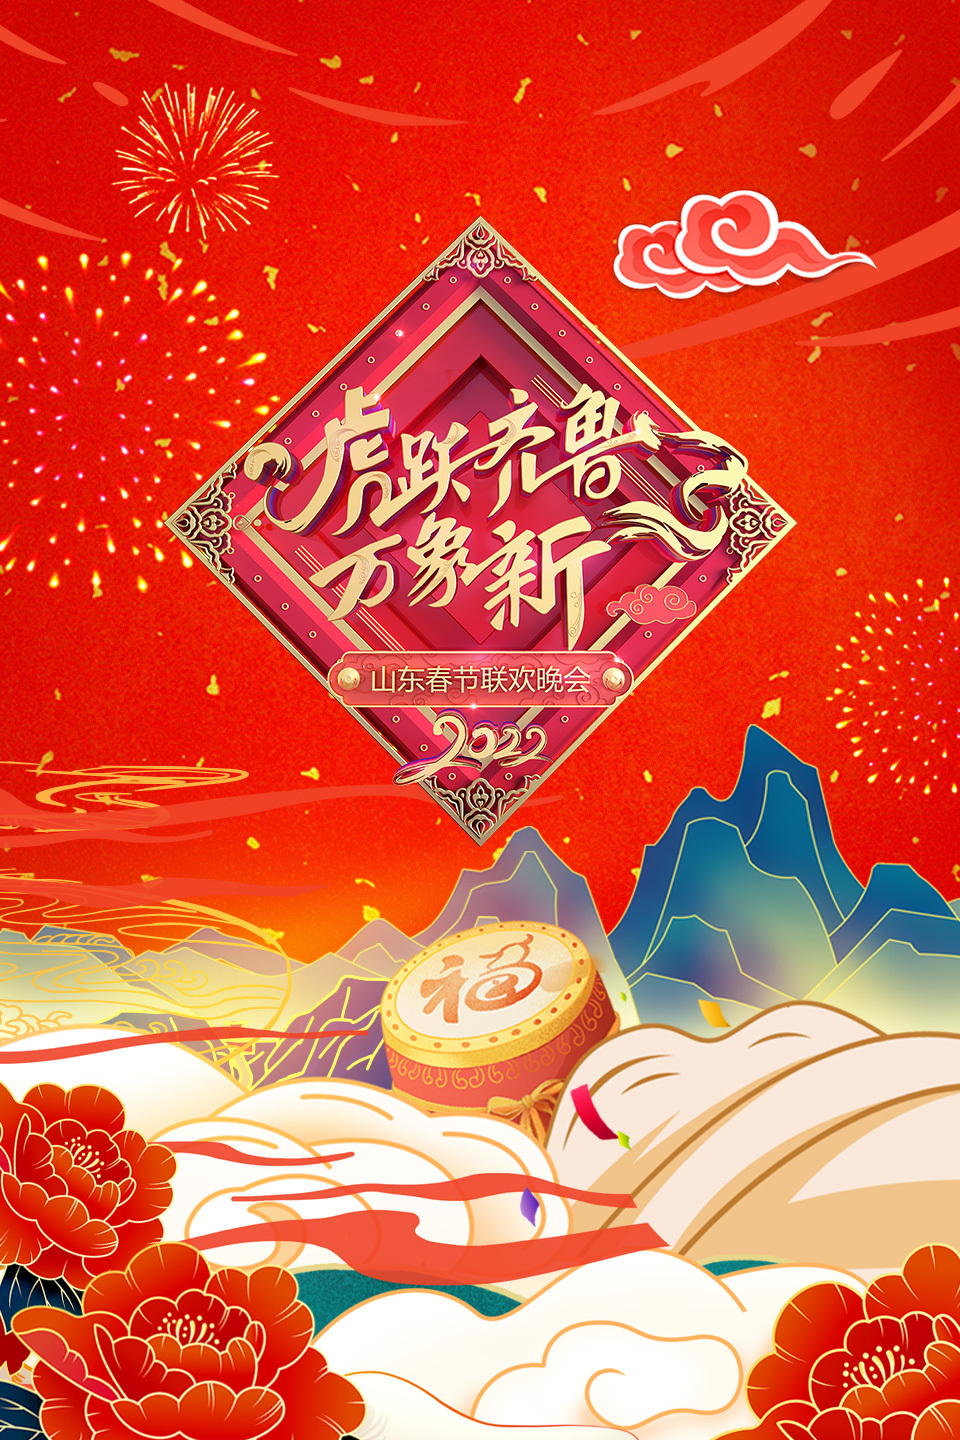 虎跃齐鲁万象新·山东春节联欢晚会2022在线观看